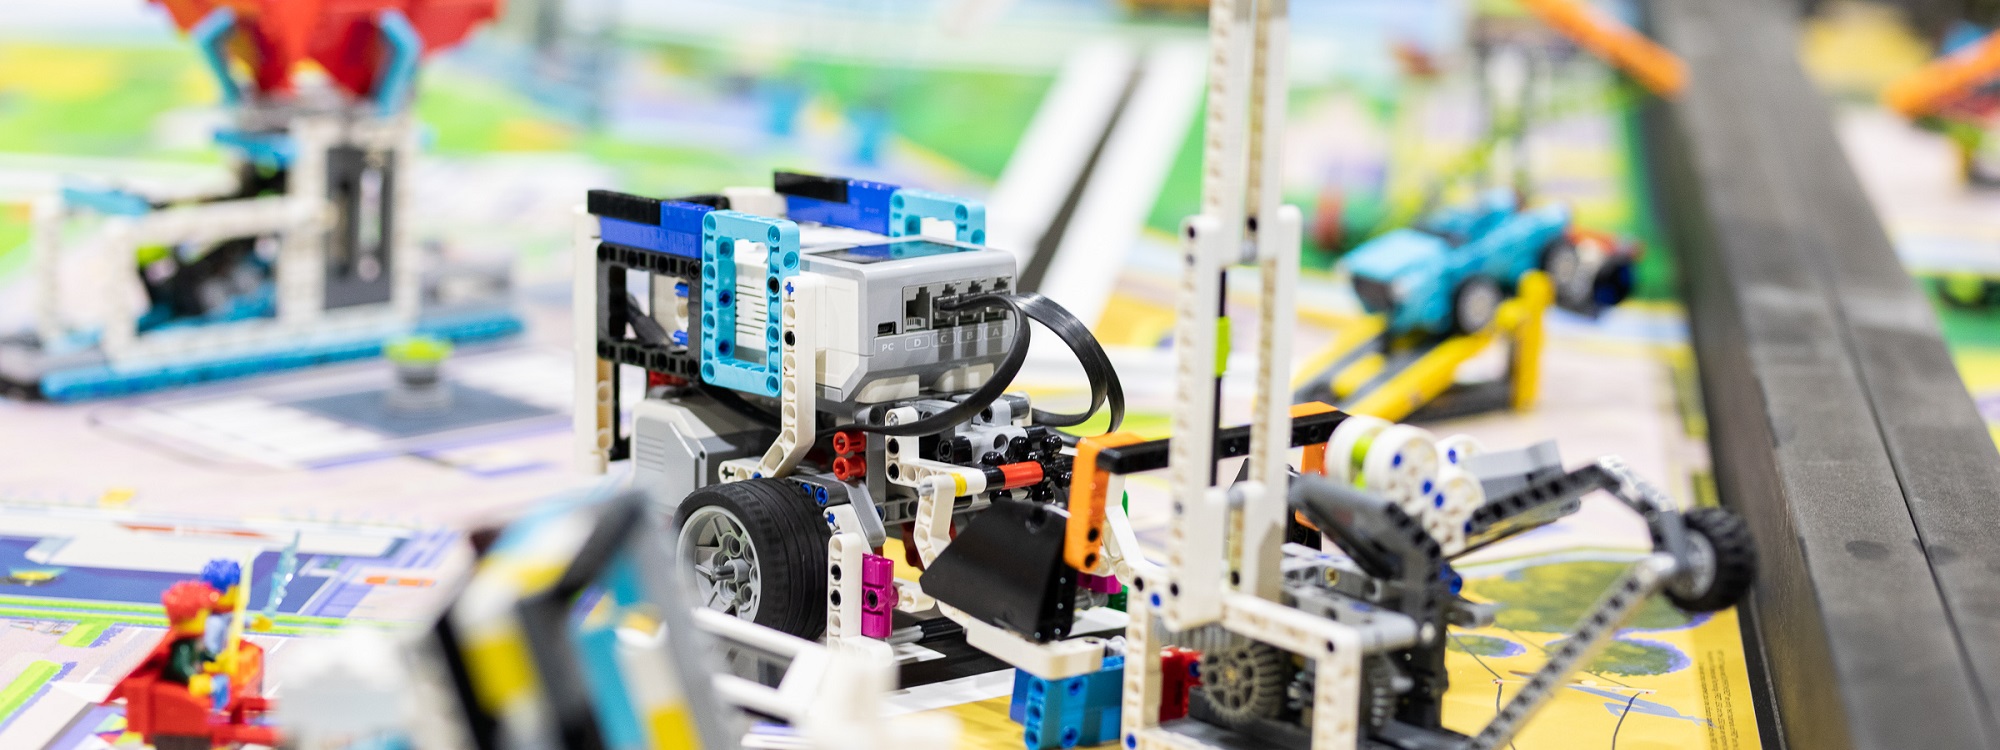 FIRST LEGO League robot